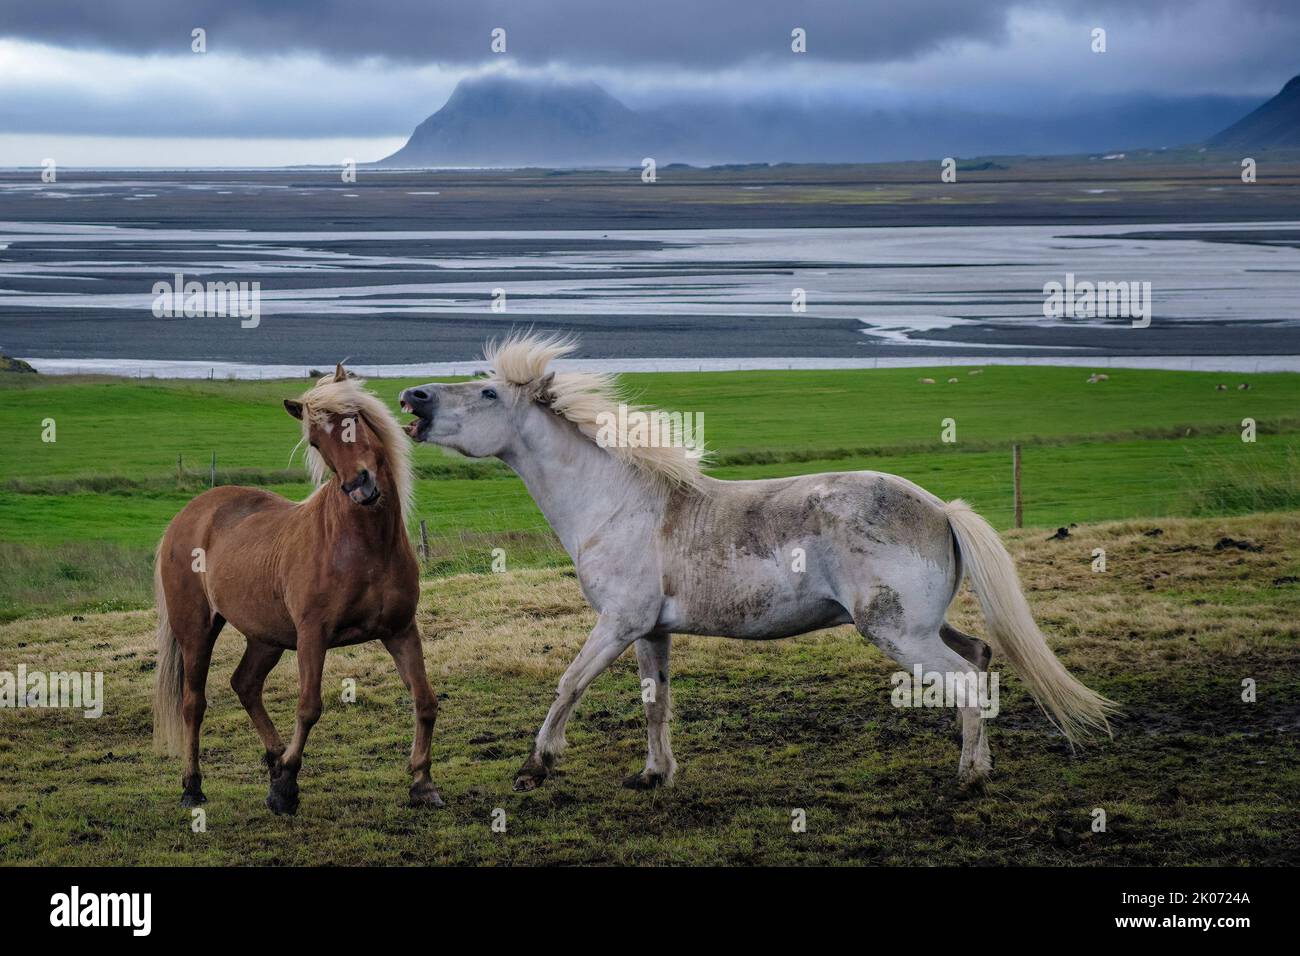 Islandpferde auf der Brekka í Lóni Farm, Stafafell, mit der Klifatindur-Bergkette im Hintergrund, bei Hofn, Island Stockfoto